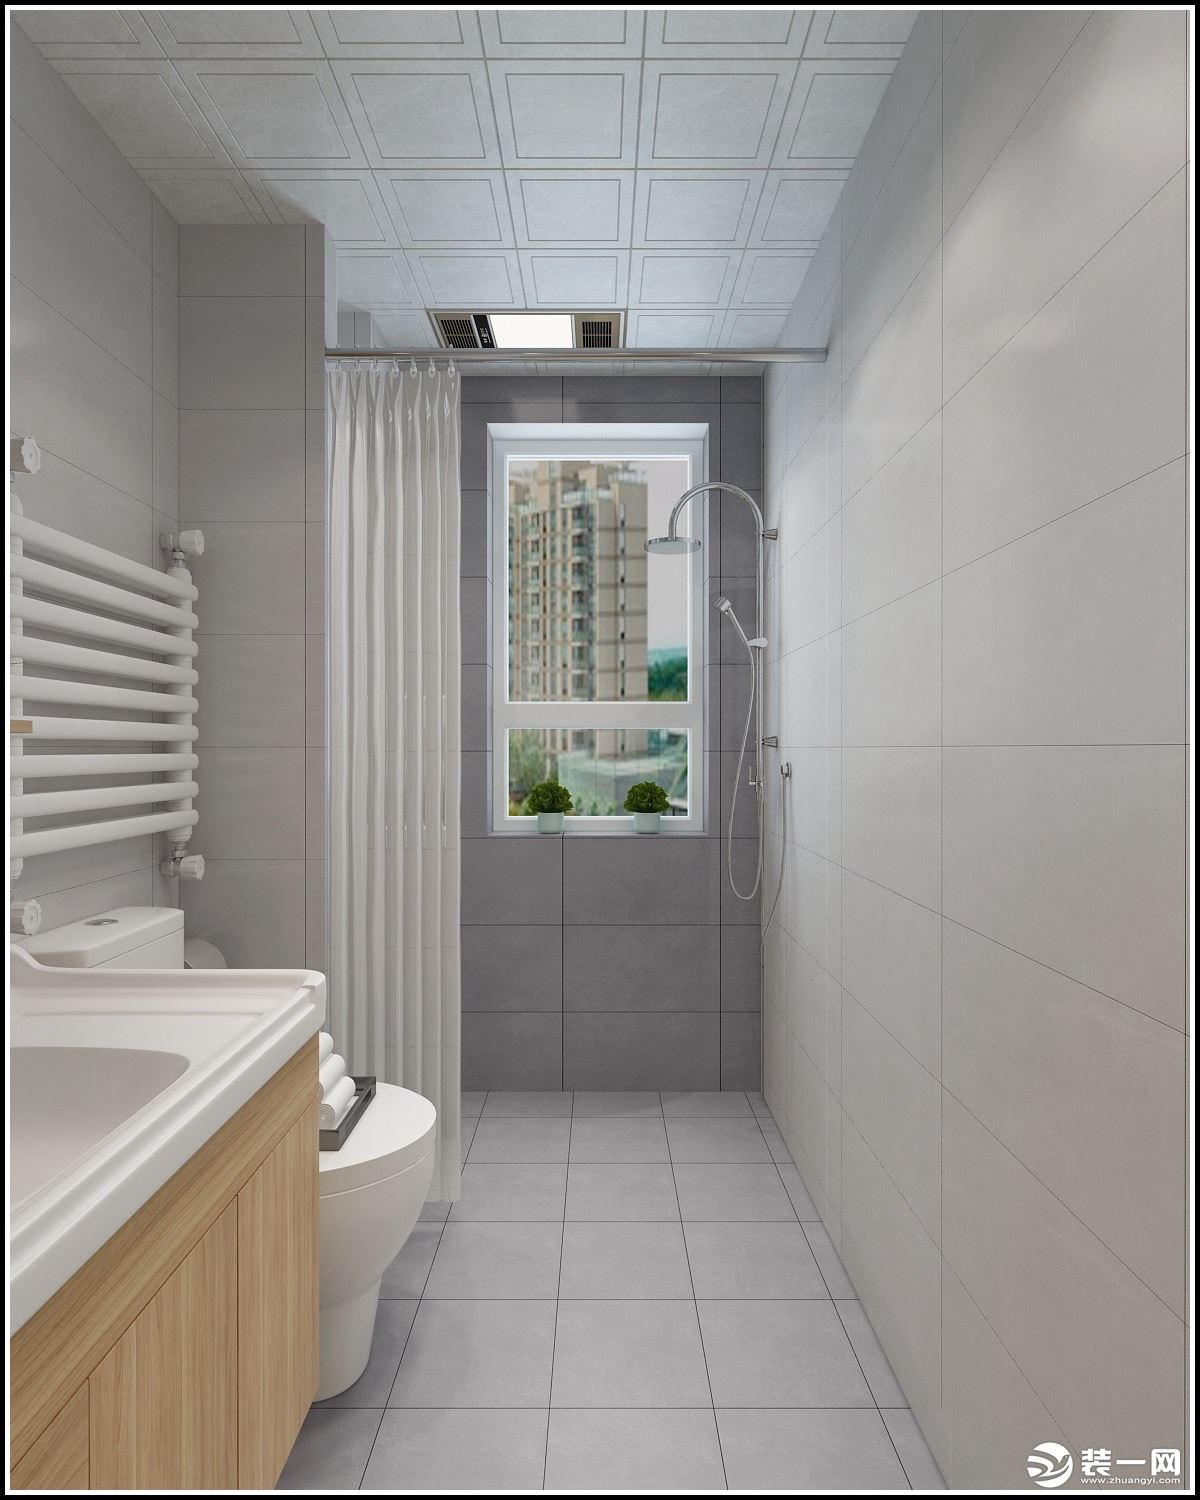 卫生间的空间，从洗漱到淋浴，动线分明，因为空间原因，淋浴这块做了一个帘子的遮挡，打造干湿分离的设计。